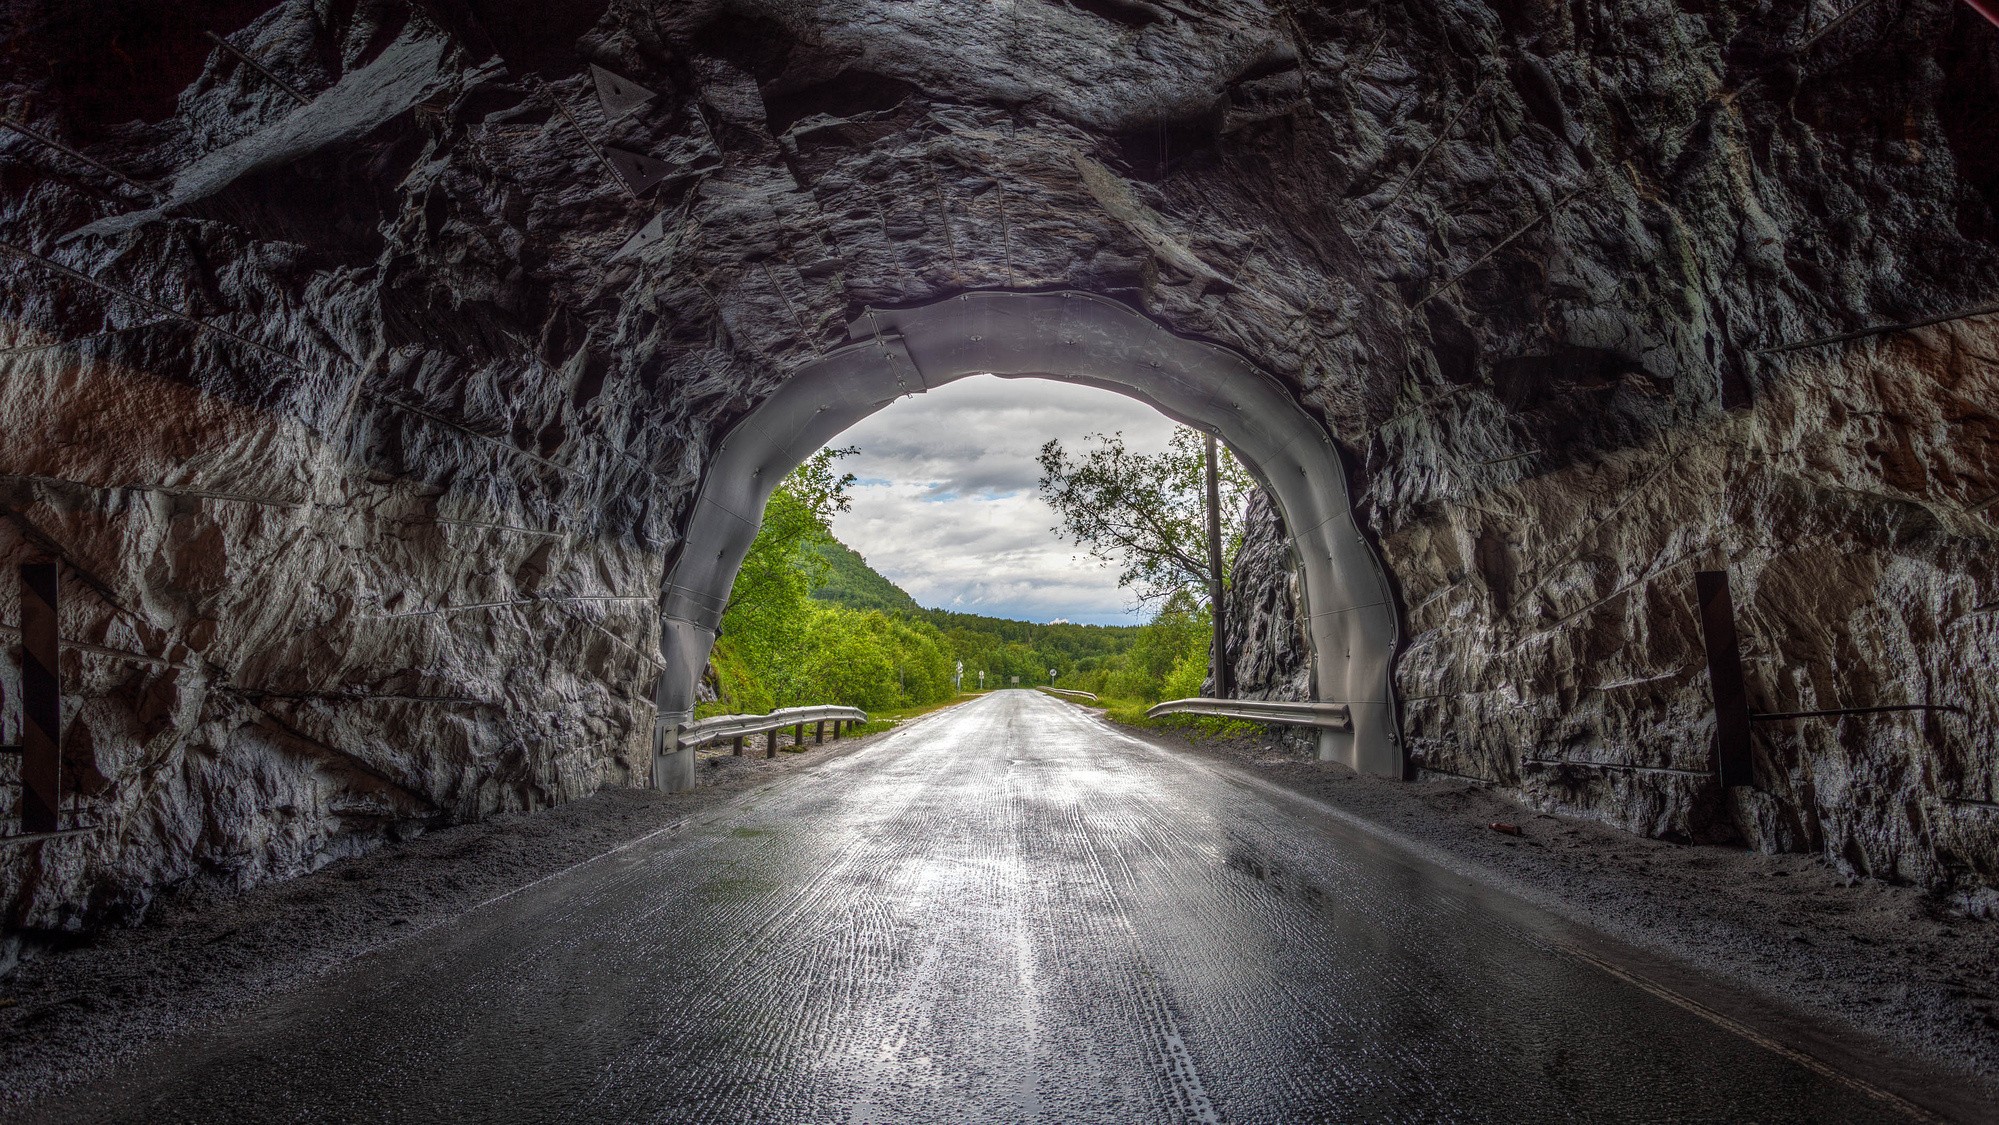 Туннель, уходящая вдаль. дорога после дождя, между холмов и деревьев. под хмурым небом